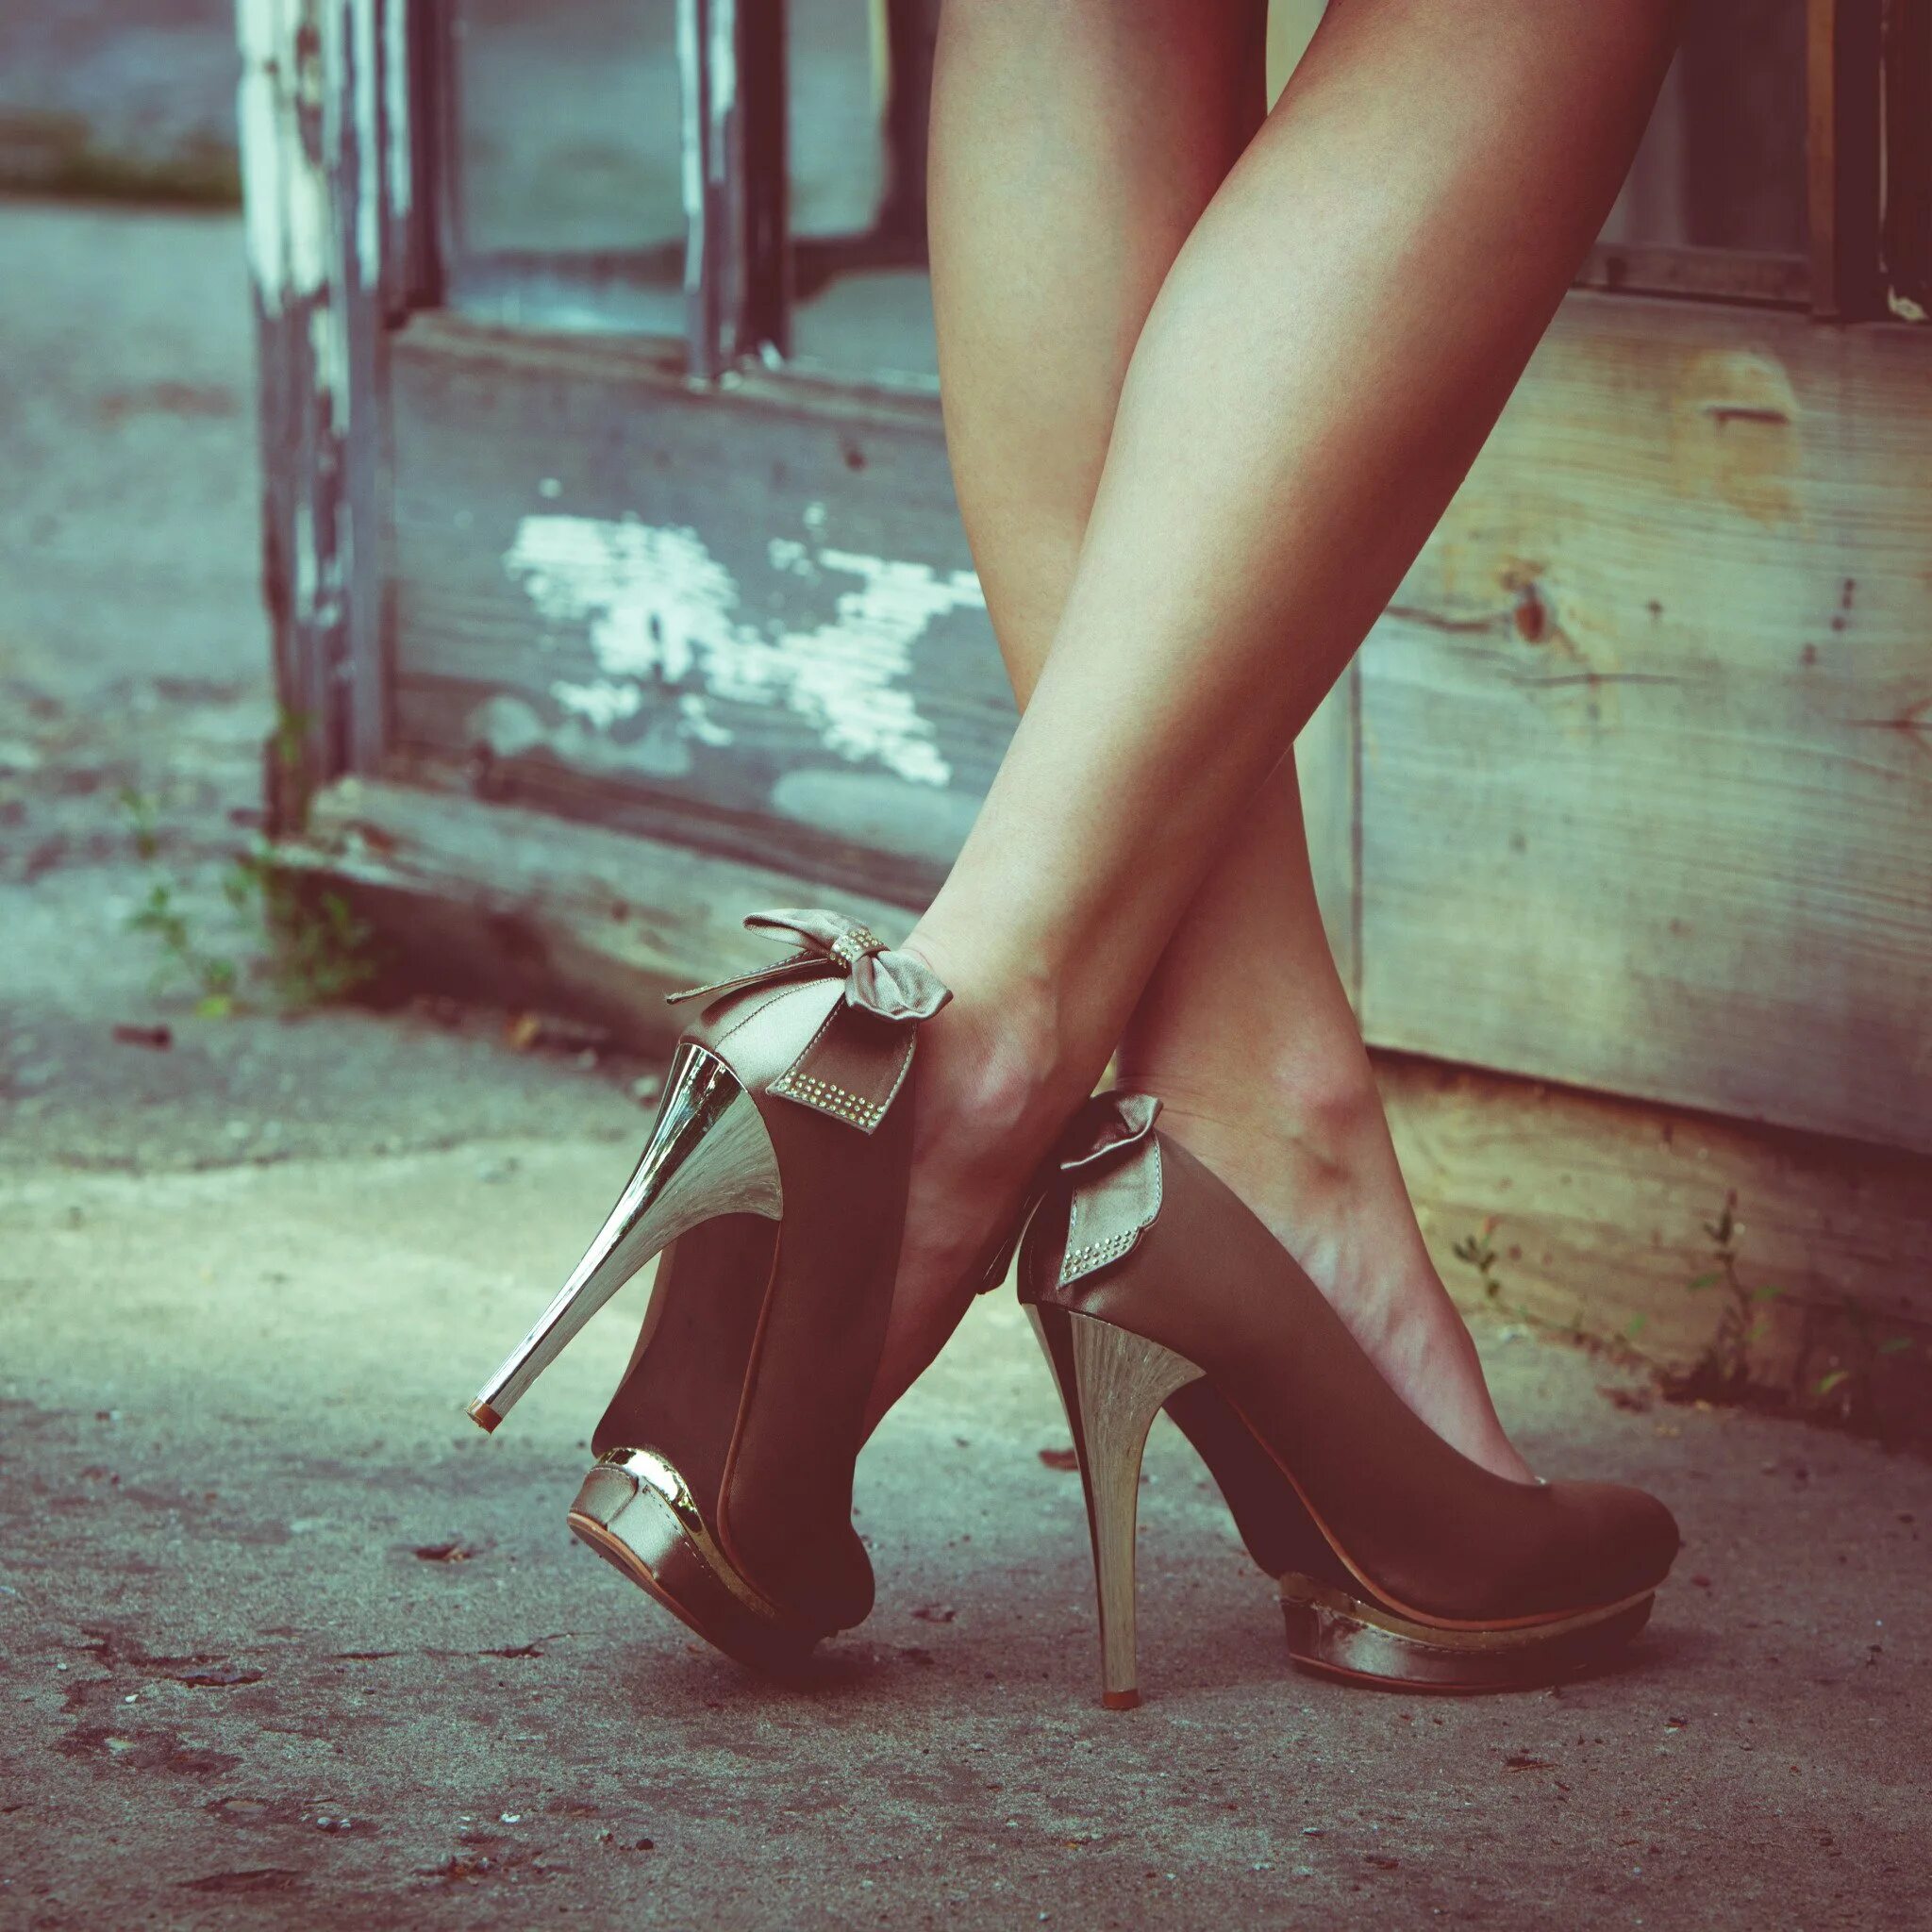 Очень красивые ноги девушки. Красивые женские ноги. Девушка в туфлях. Красивые ноги в туфлях. Ножки в туфлях на шпильке.